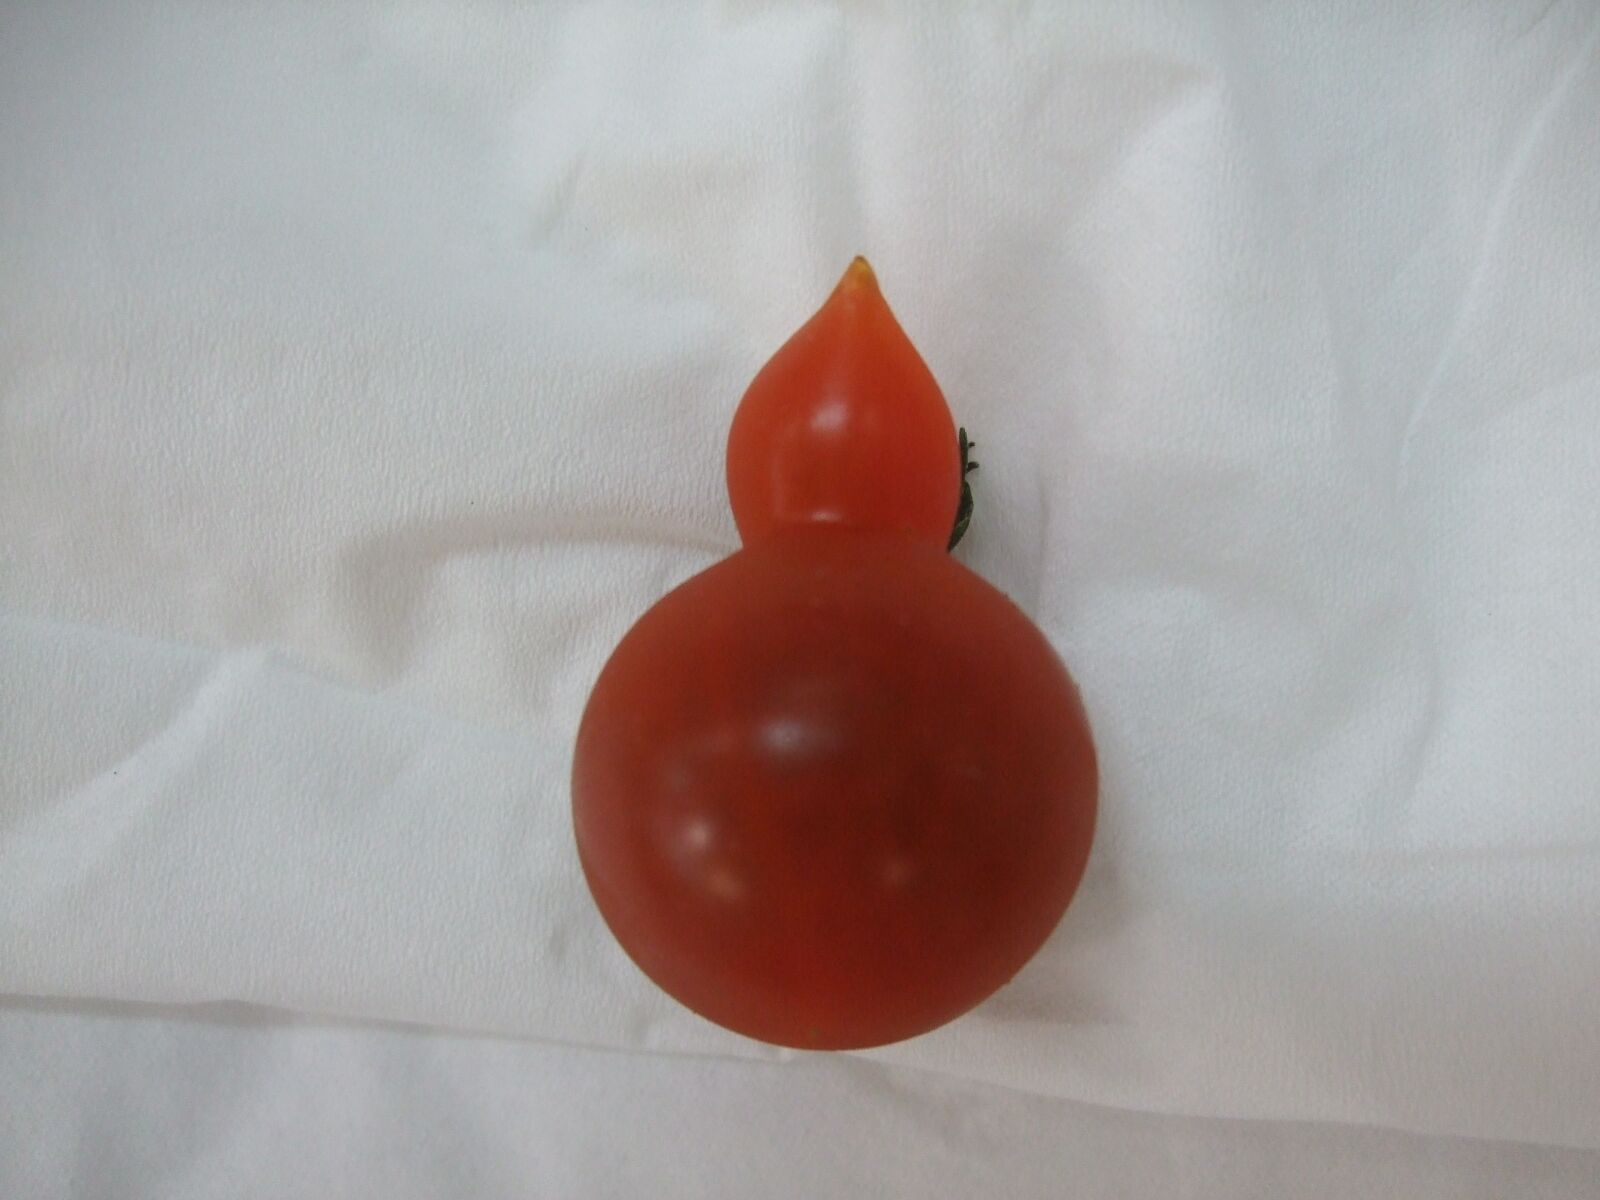 Fujifilm FinePix F40fd sample photo. Mini tomato, red, malformations photography